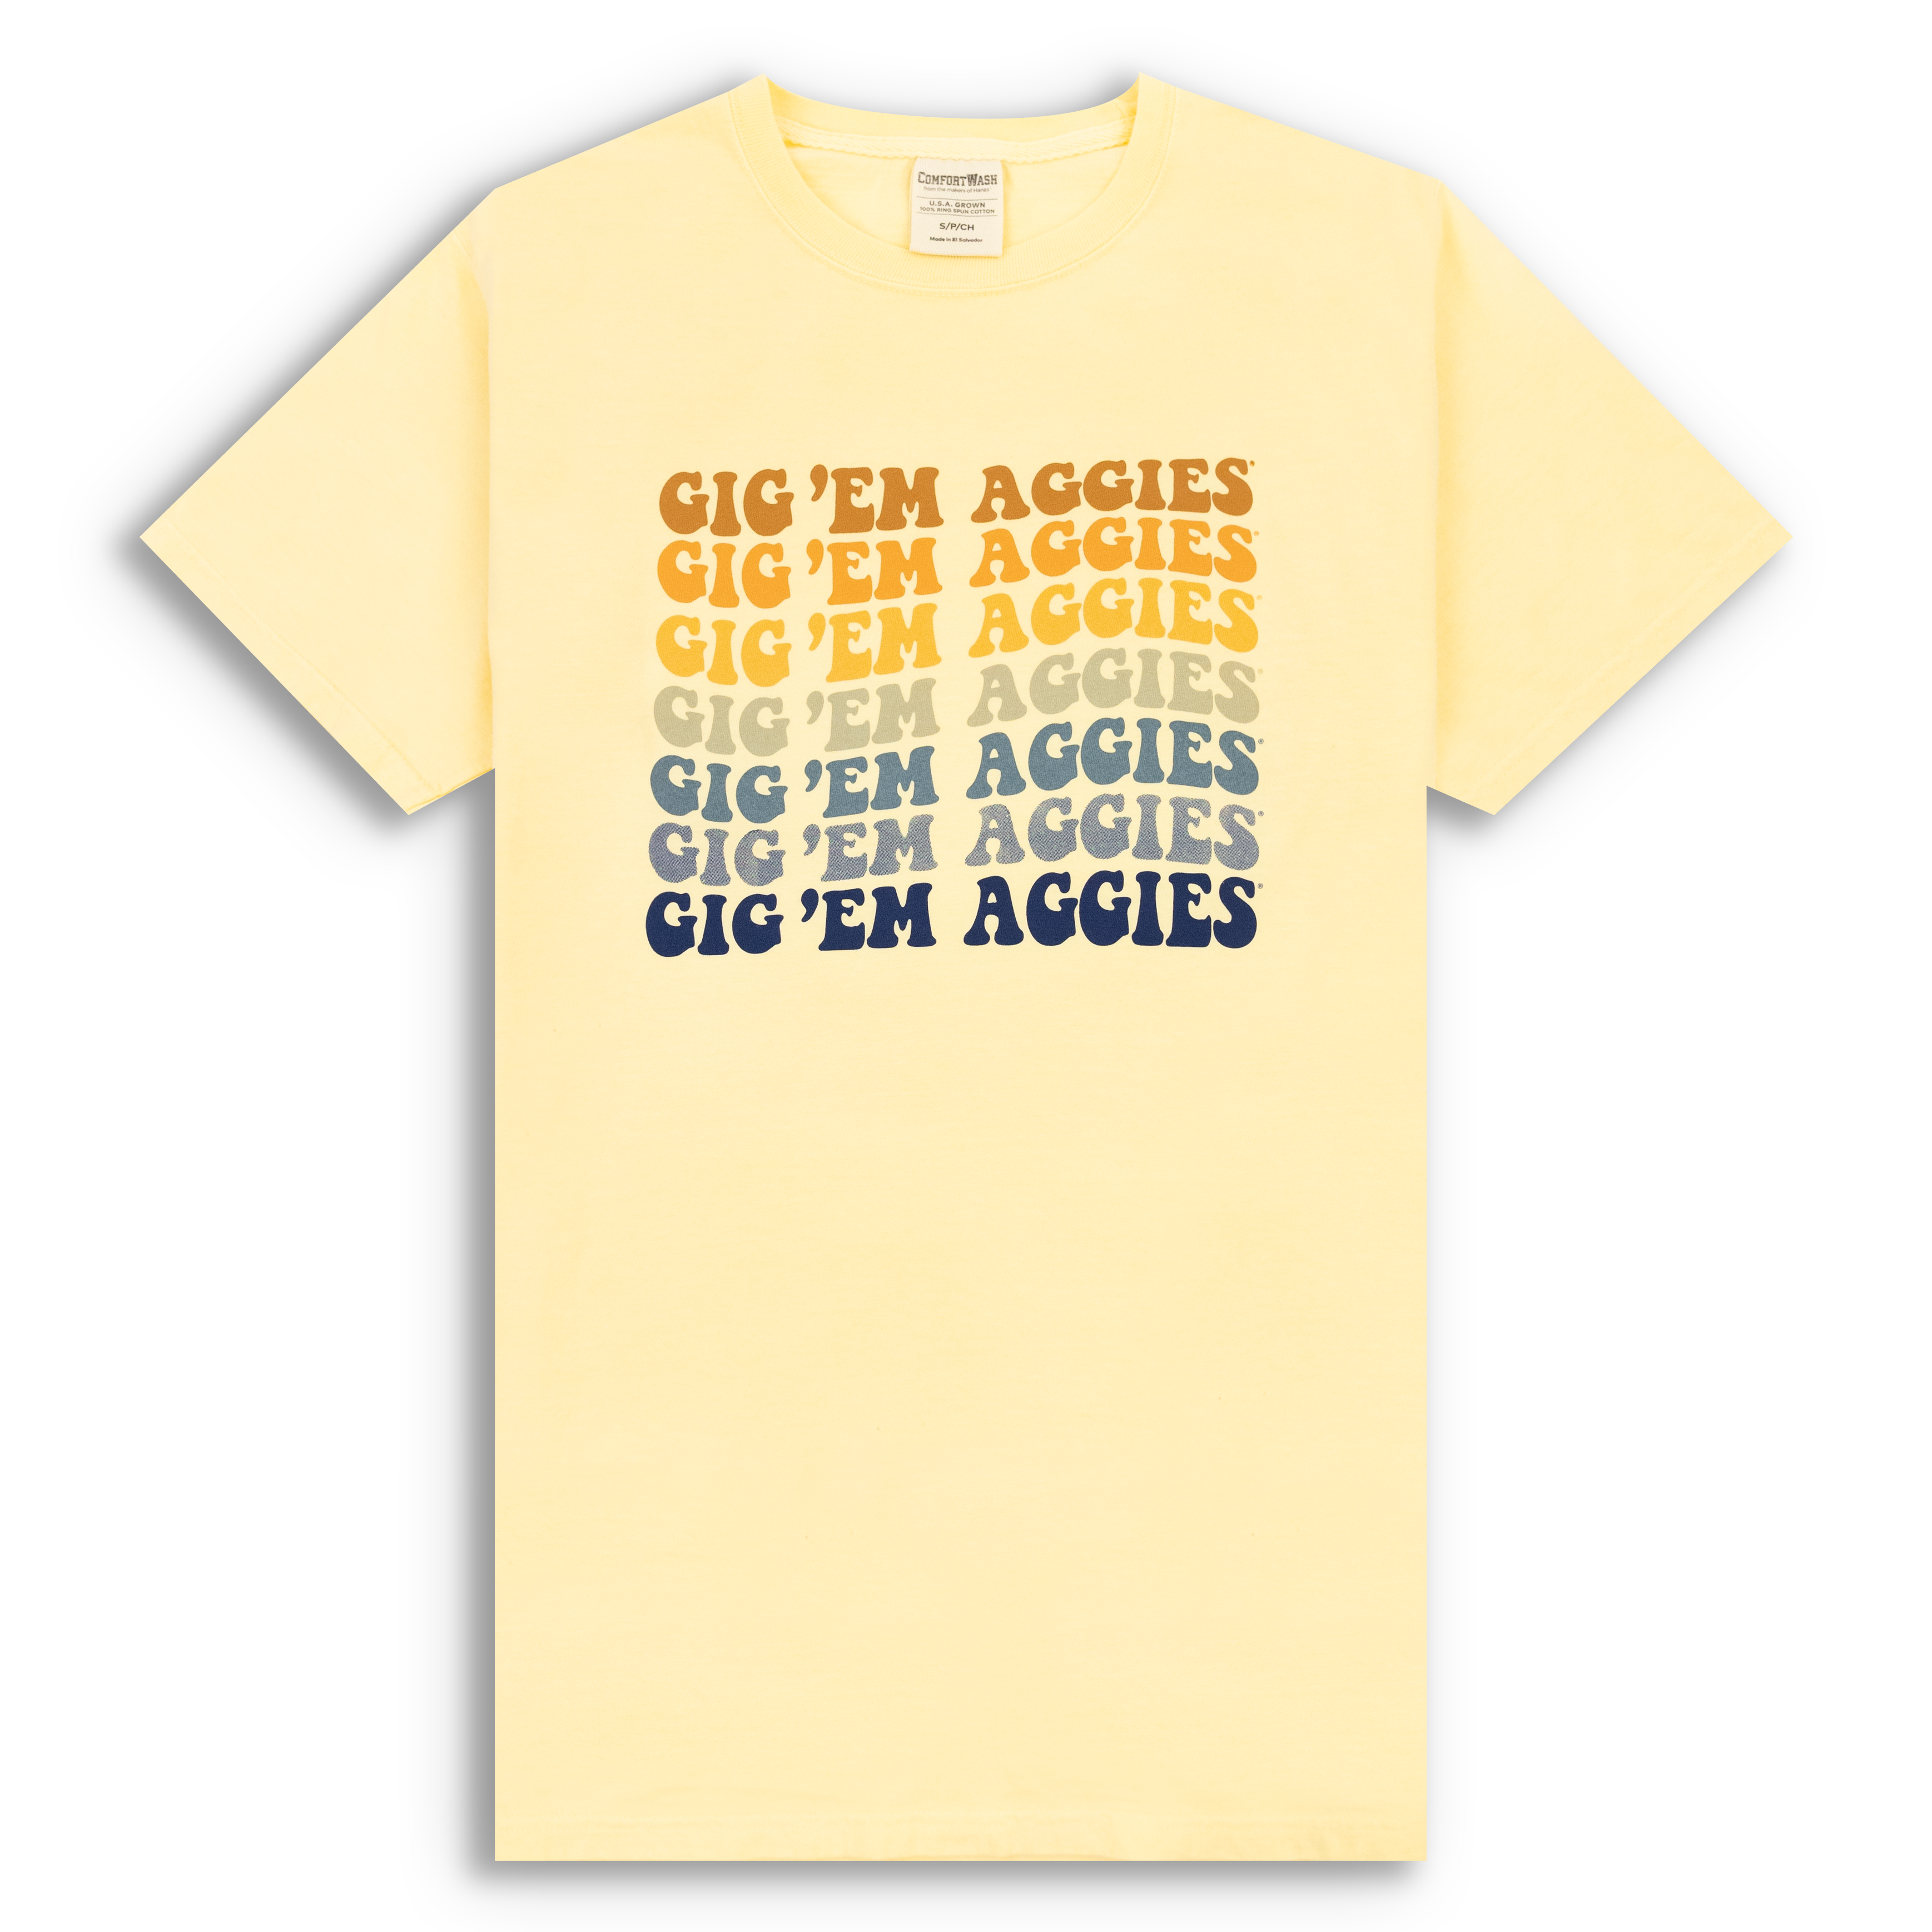 Texas A&M Shirt Gig'em Aggie Aggies Howdytexas AM 